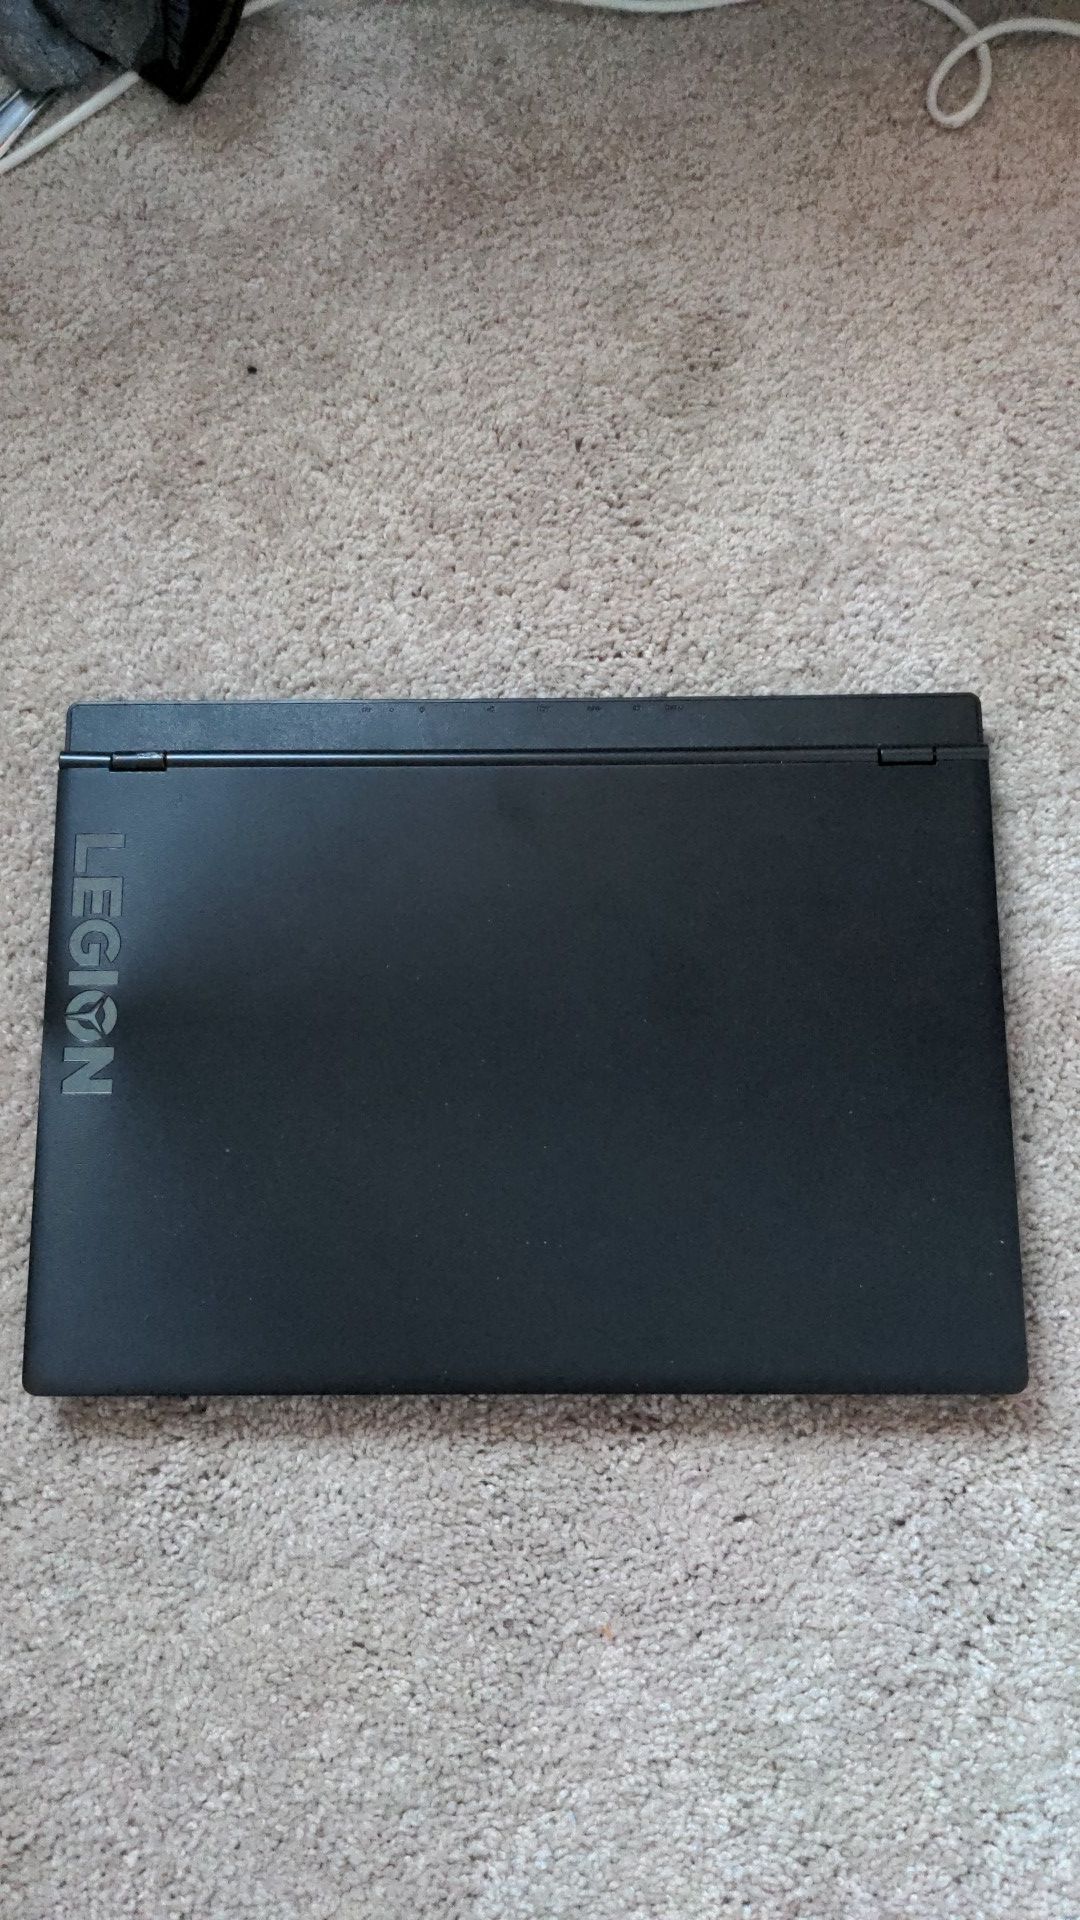 Gaming Laptop: Lenovo y540 15"